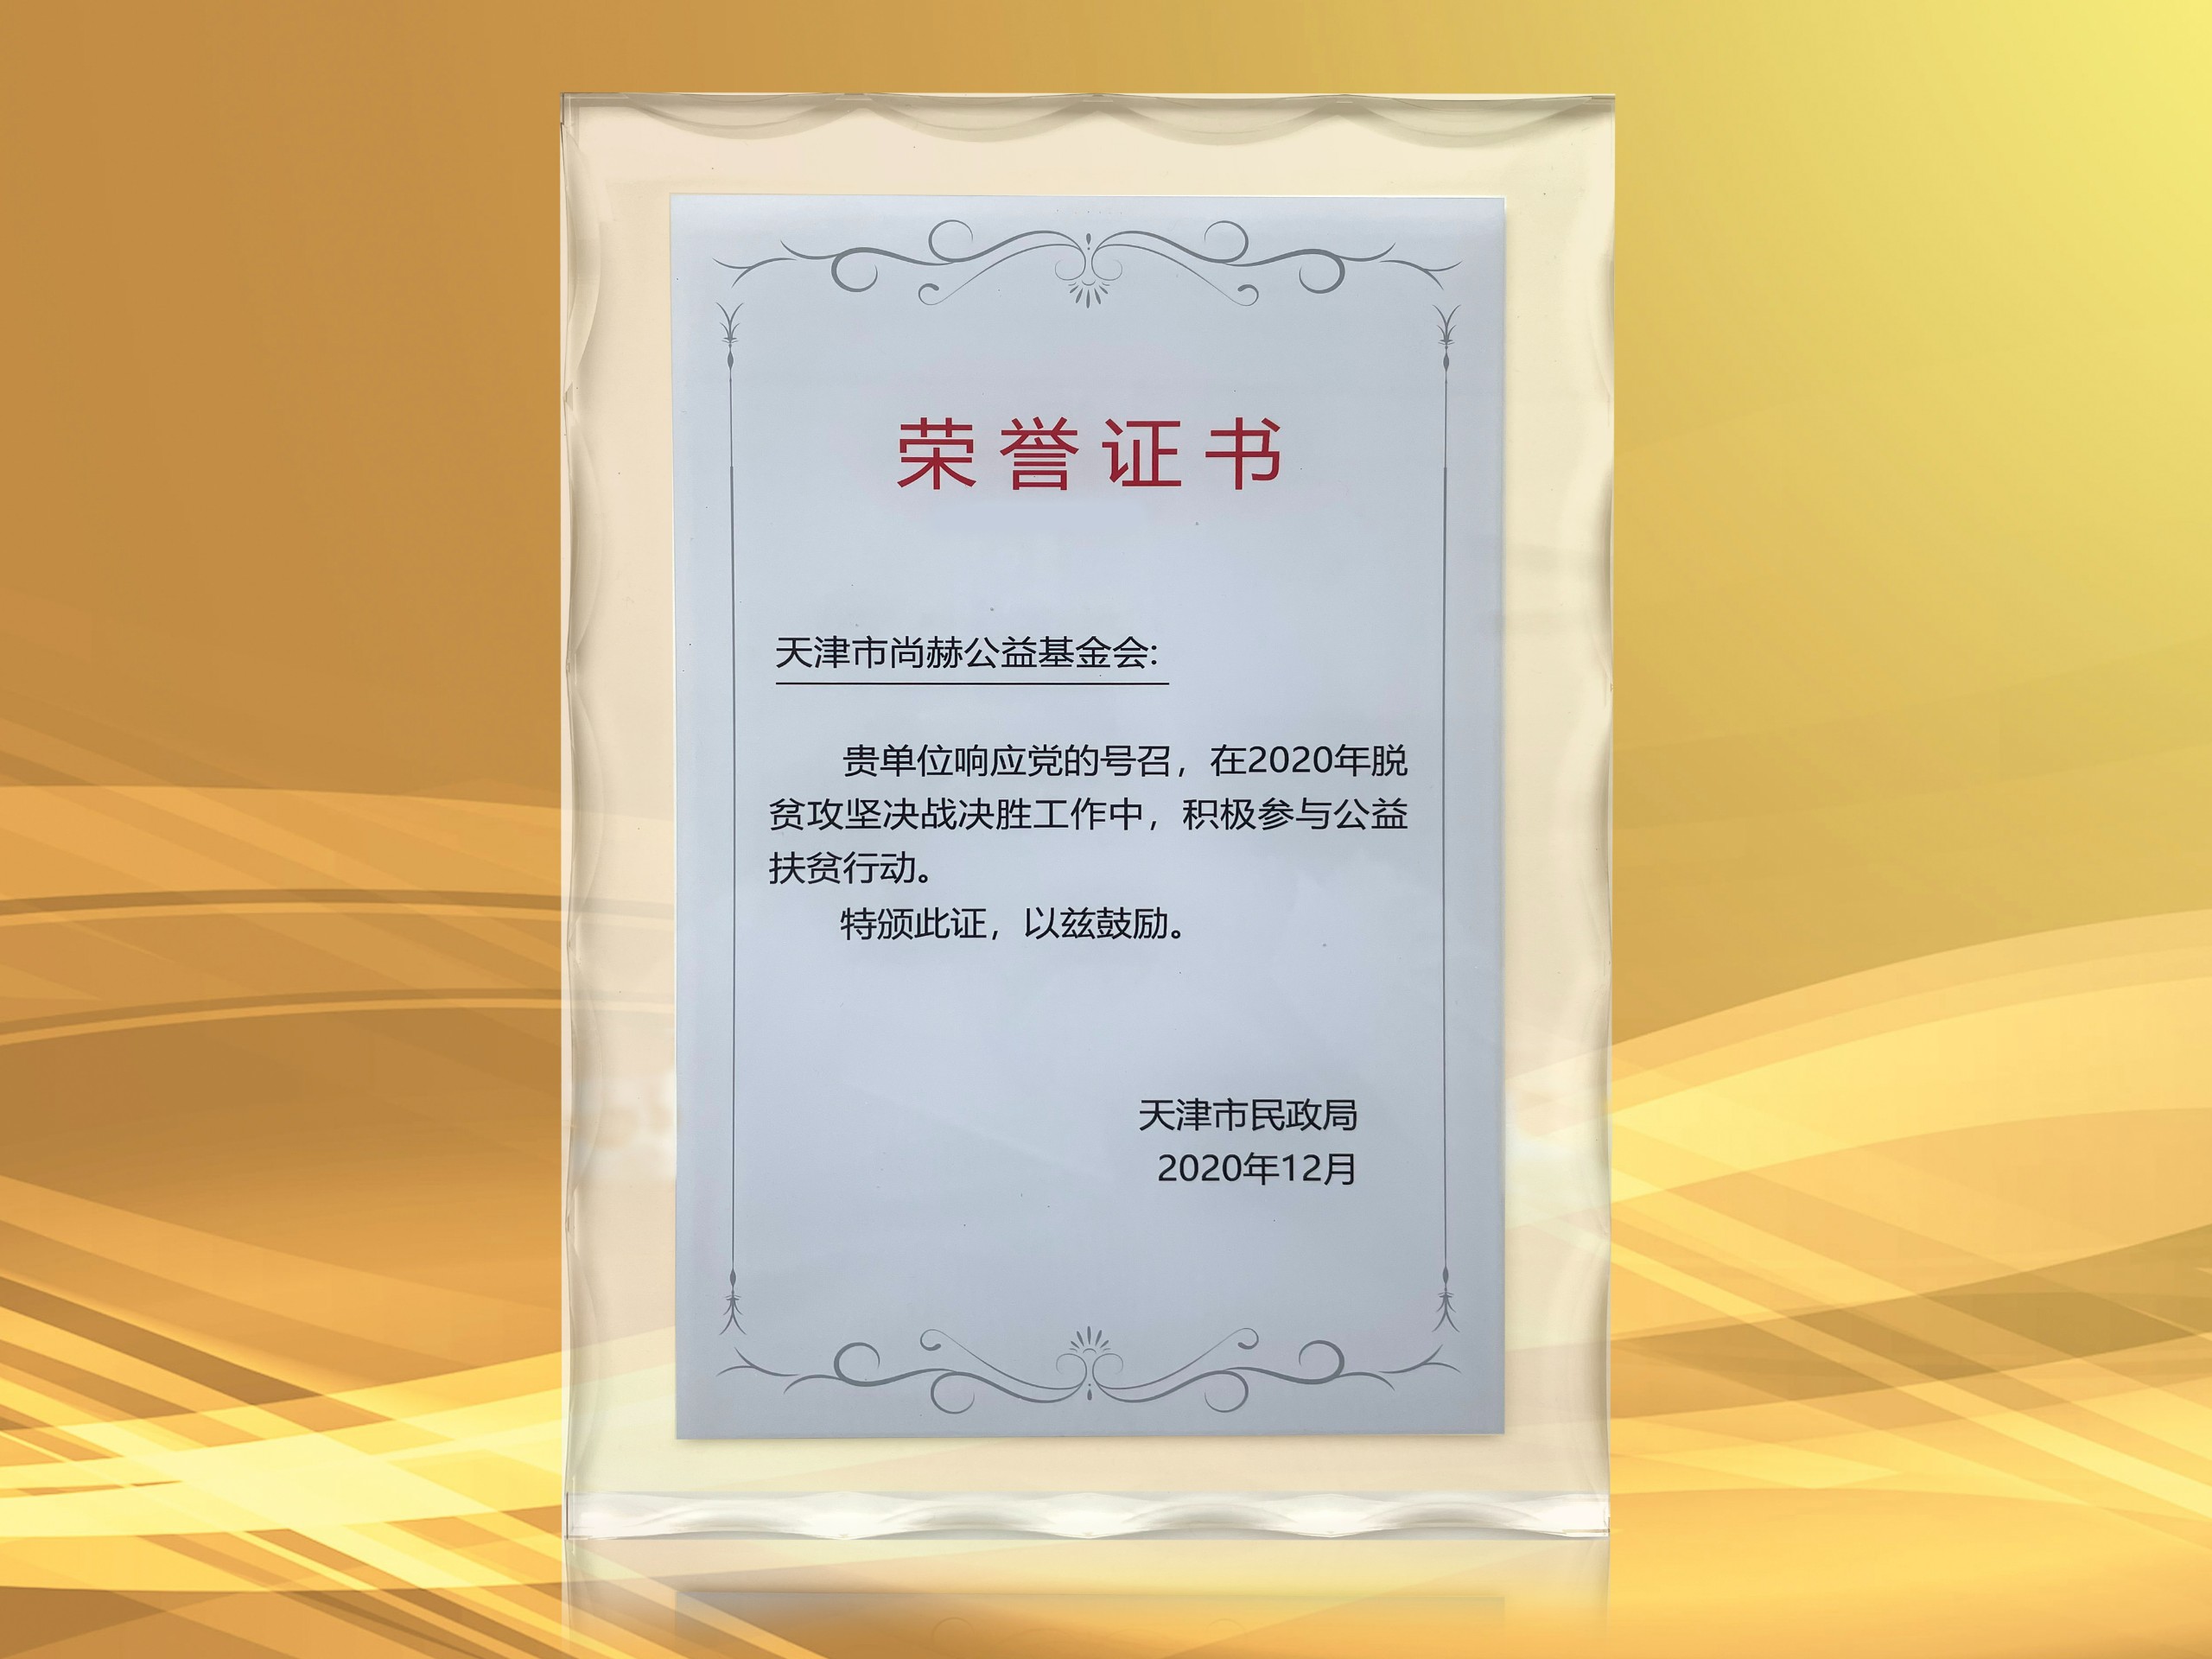 2021年3月-正规的十大网投实体平台(中国)有限公司公益基金会获得天津市民政局颁发的荣誉证书